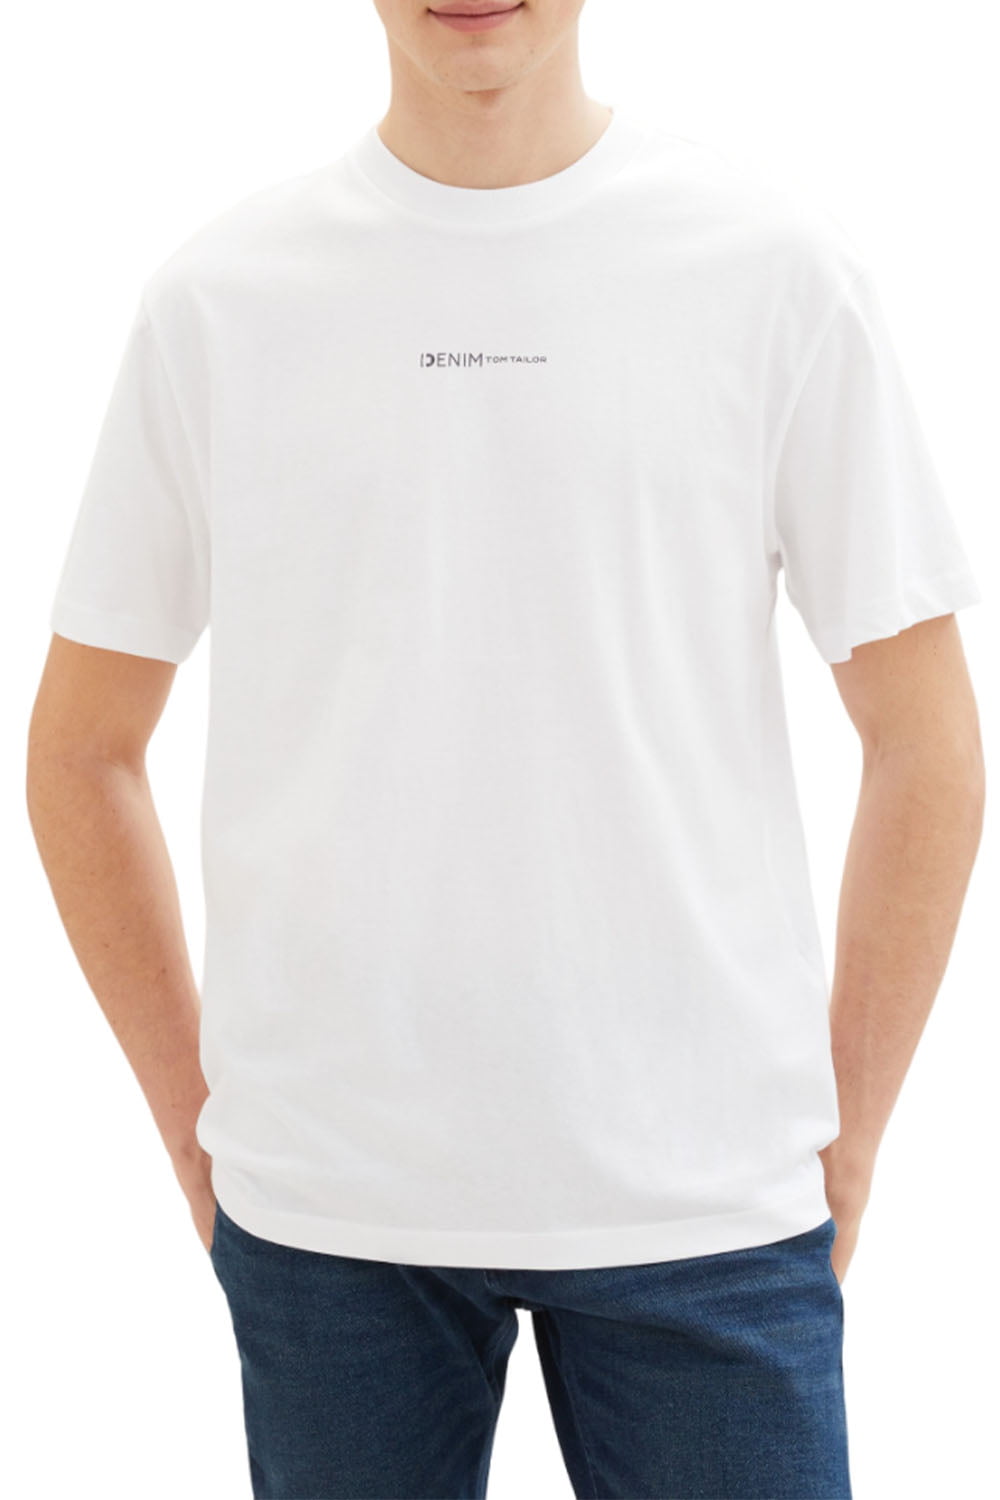 Ανδρική Κοντομάνικη Μπλούζα TOM TAILOR 1040880-20000 Ασπρο